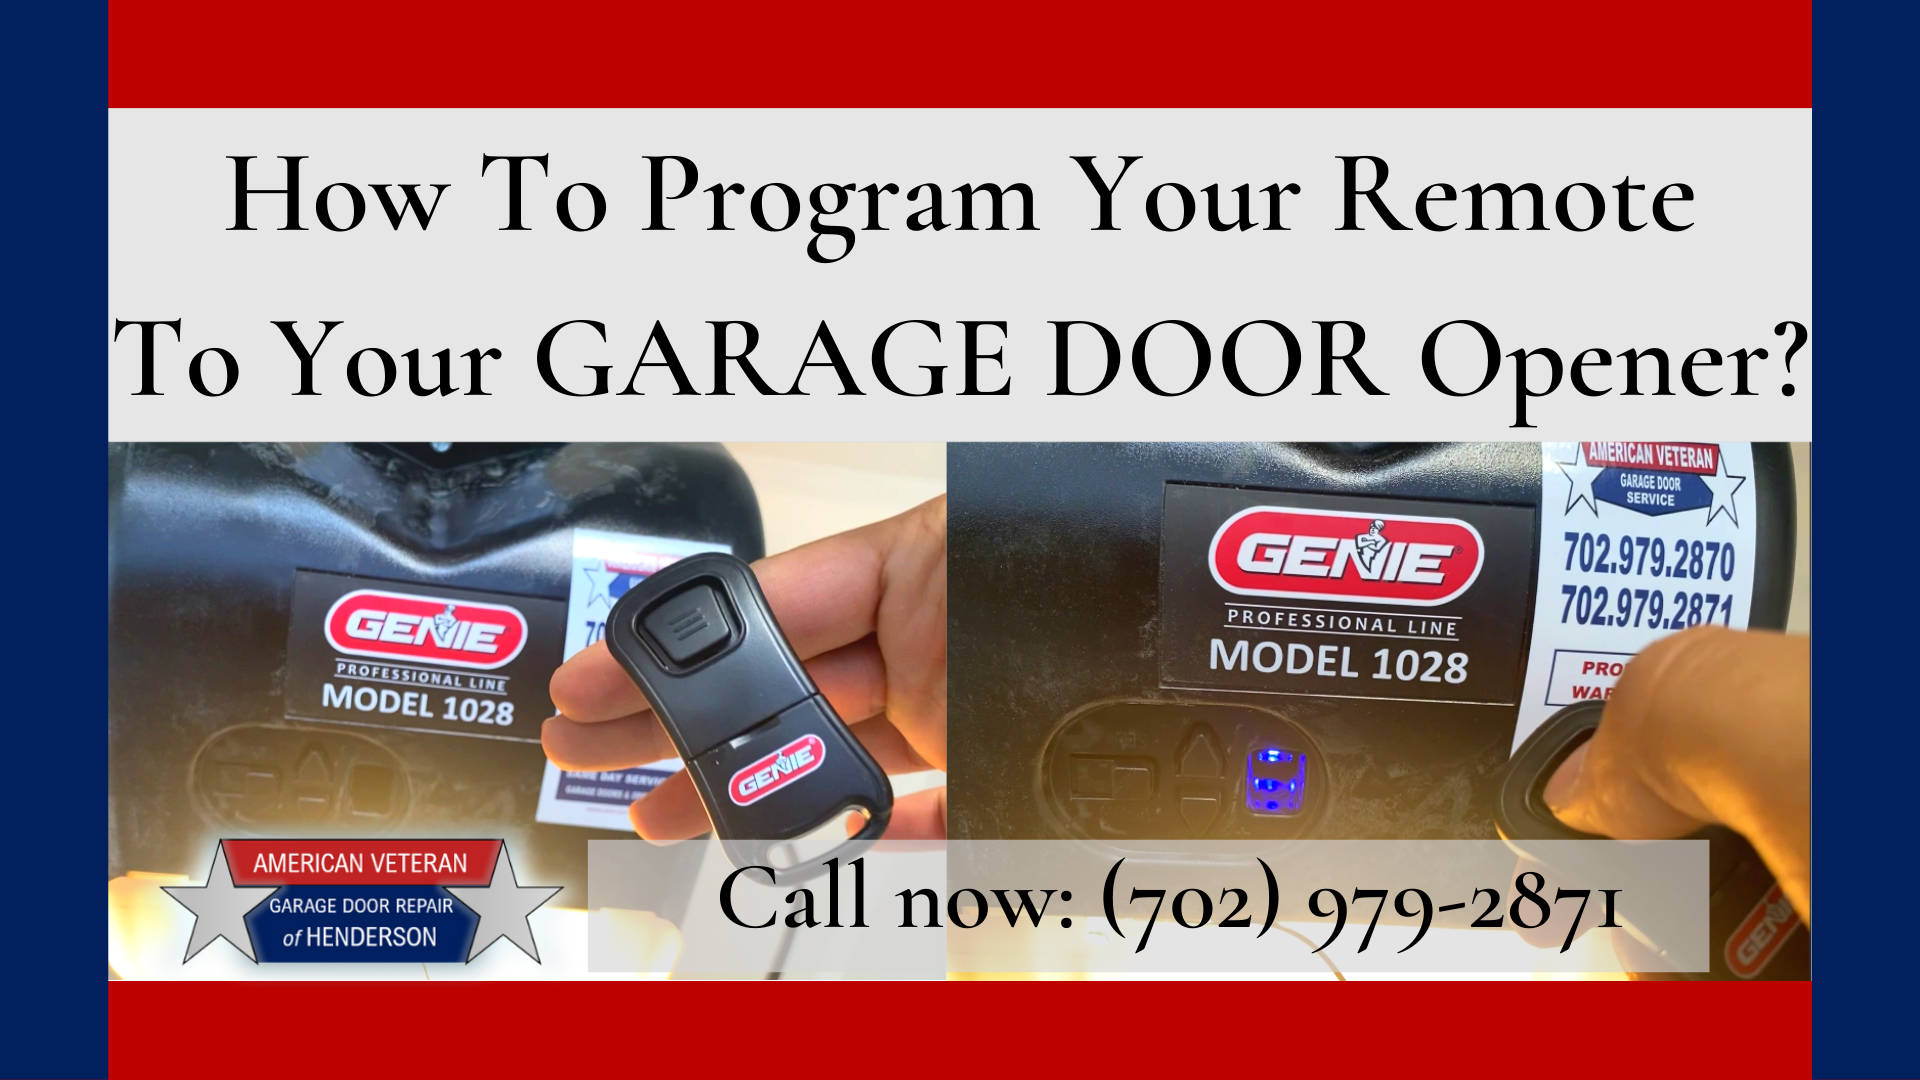 How To Program Your Remote to Your Genie Garage Door Opener? - How To Program Your Remote To Your Garage Door Opener 1